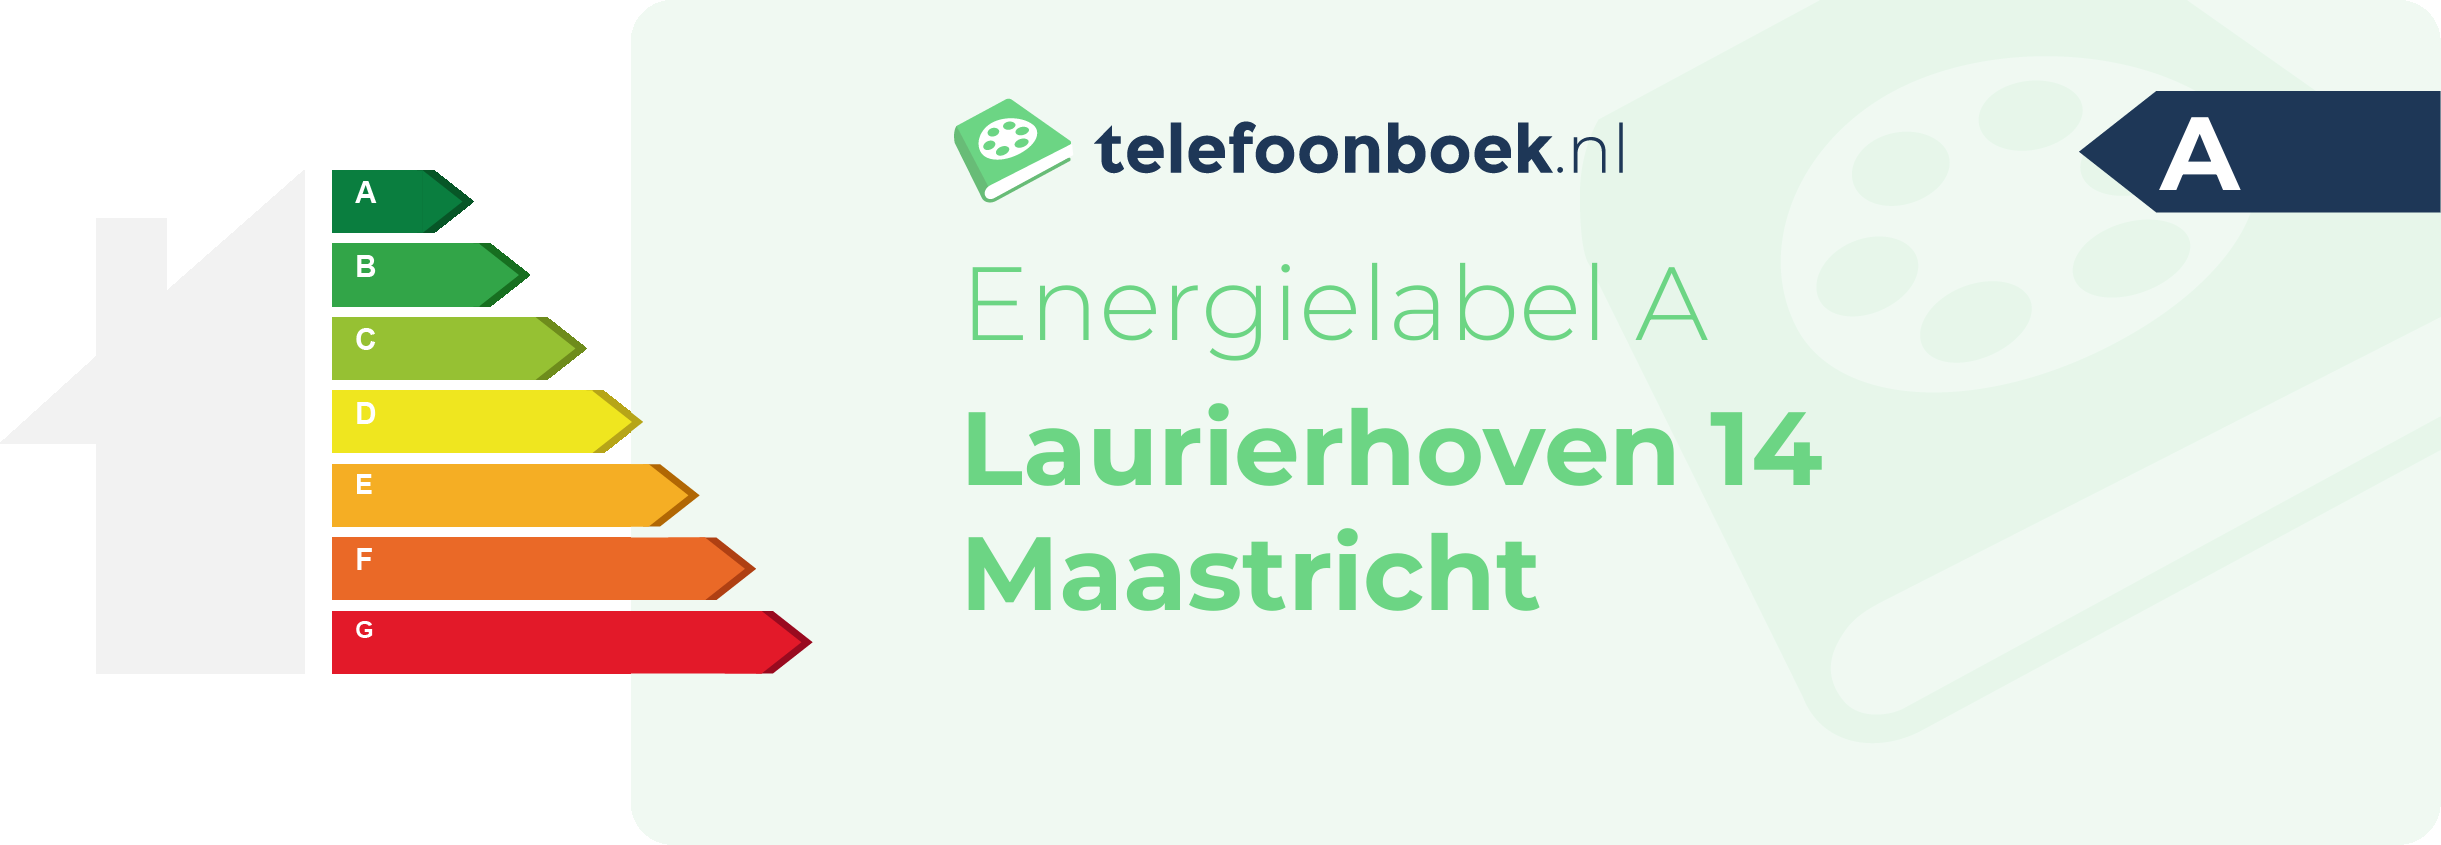 Energielabel Laurierhoven 14 Maastricht